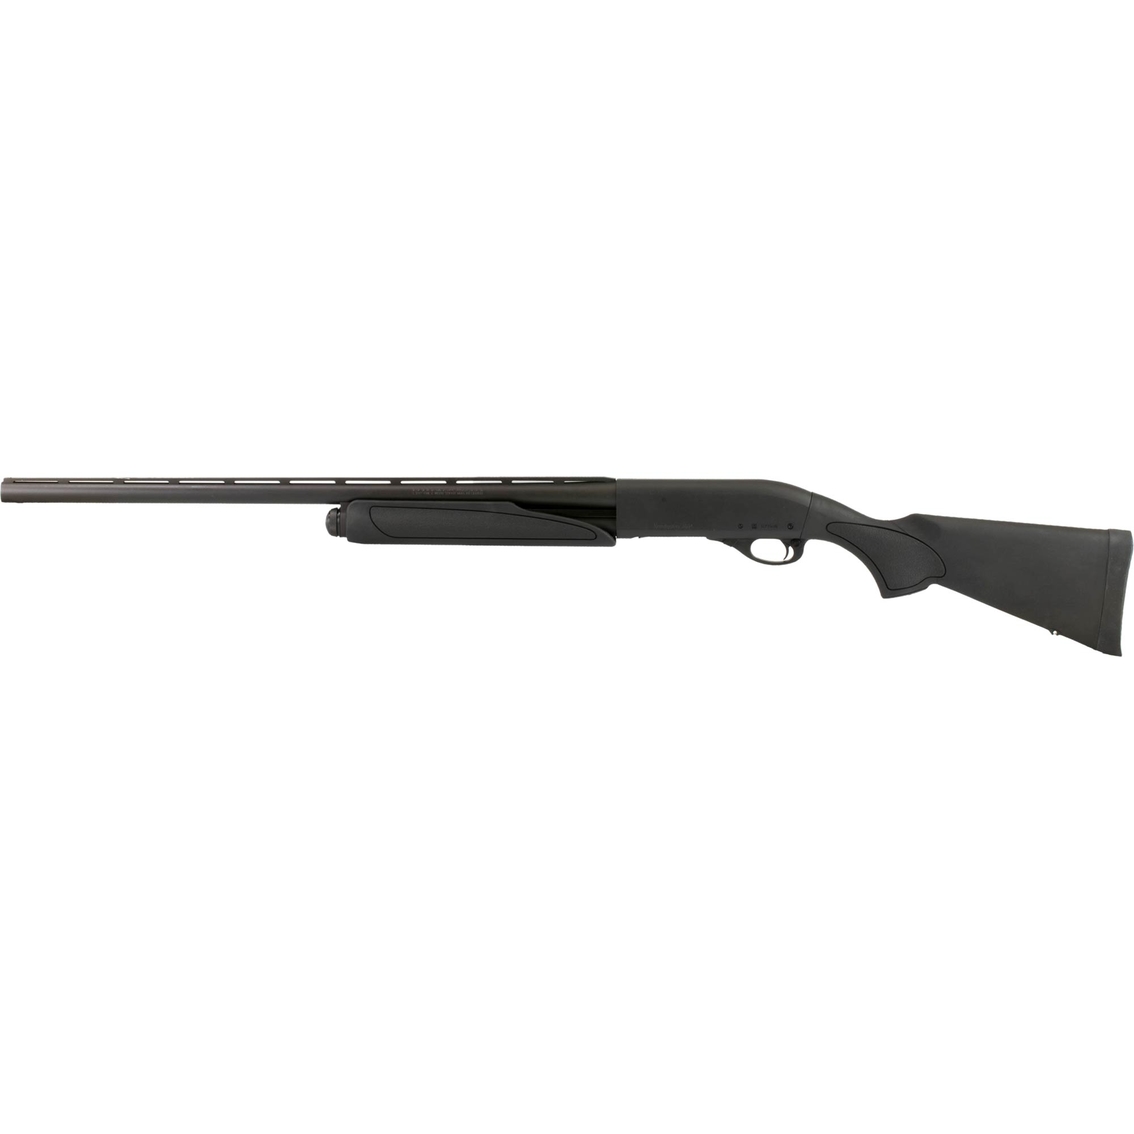 Remington 870 Express 12 Ga. 3 in. Chamber 26 in. Barrel 4 Rnd Shotgun Black - Image 2 of 2